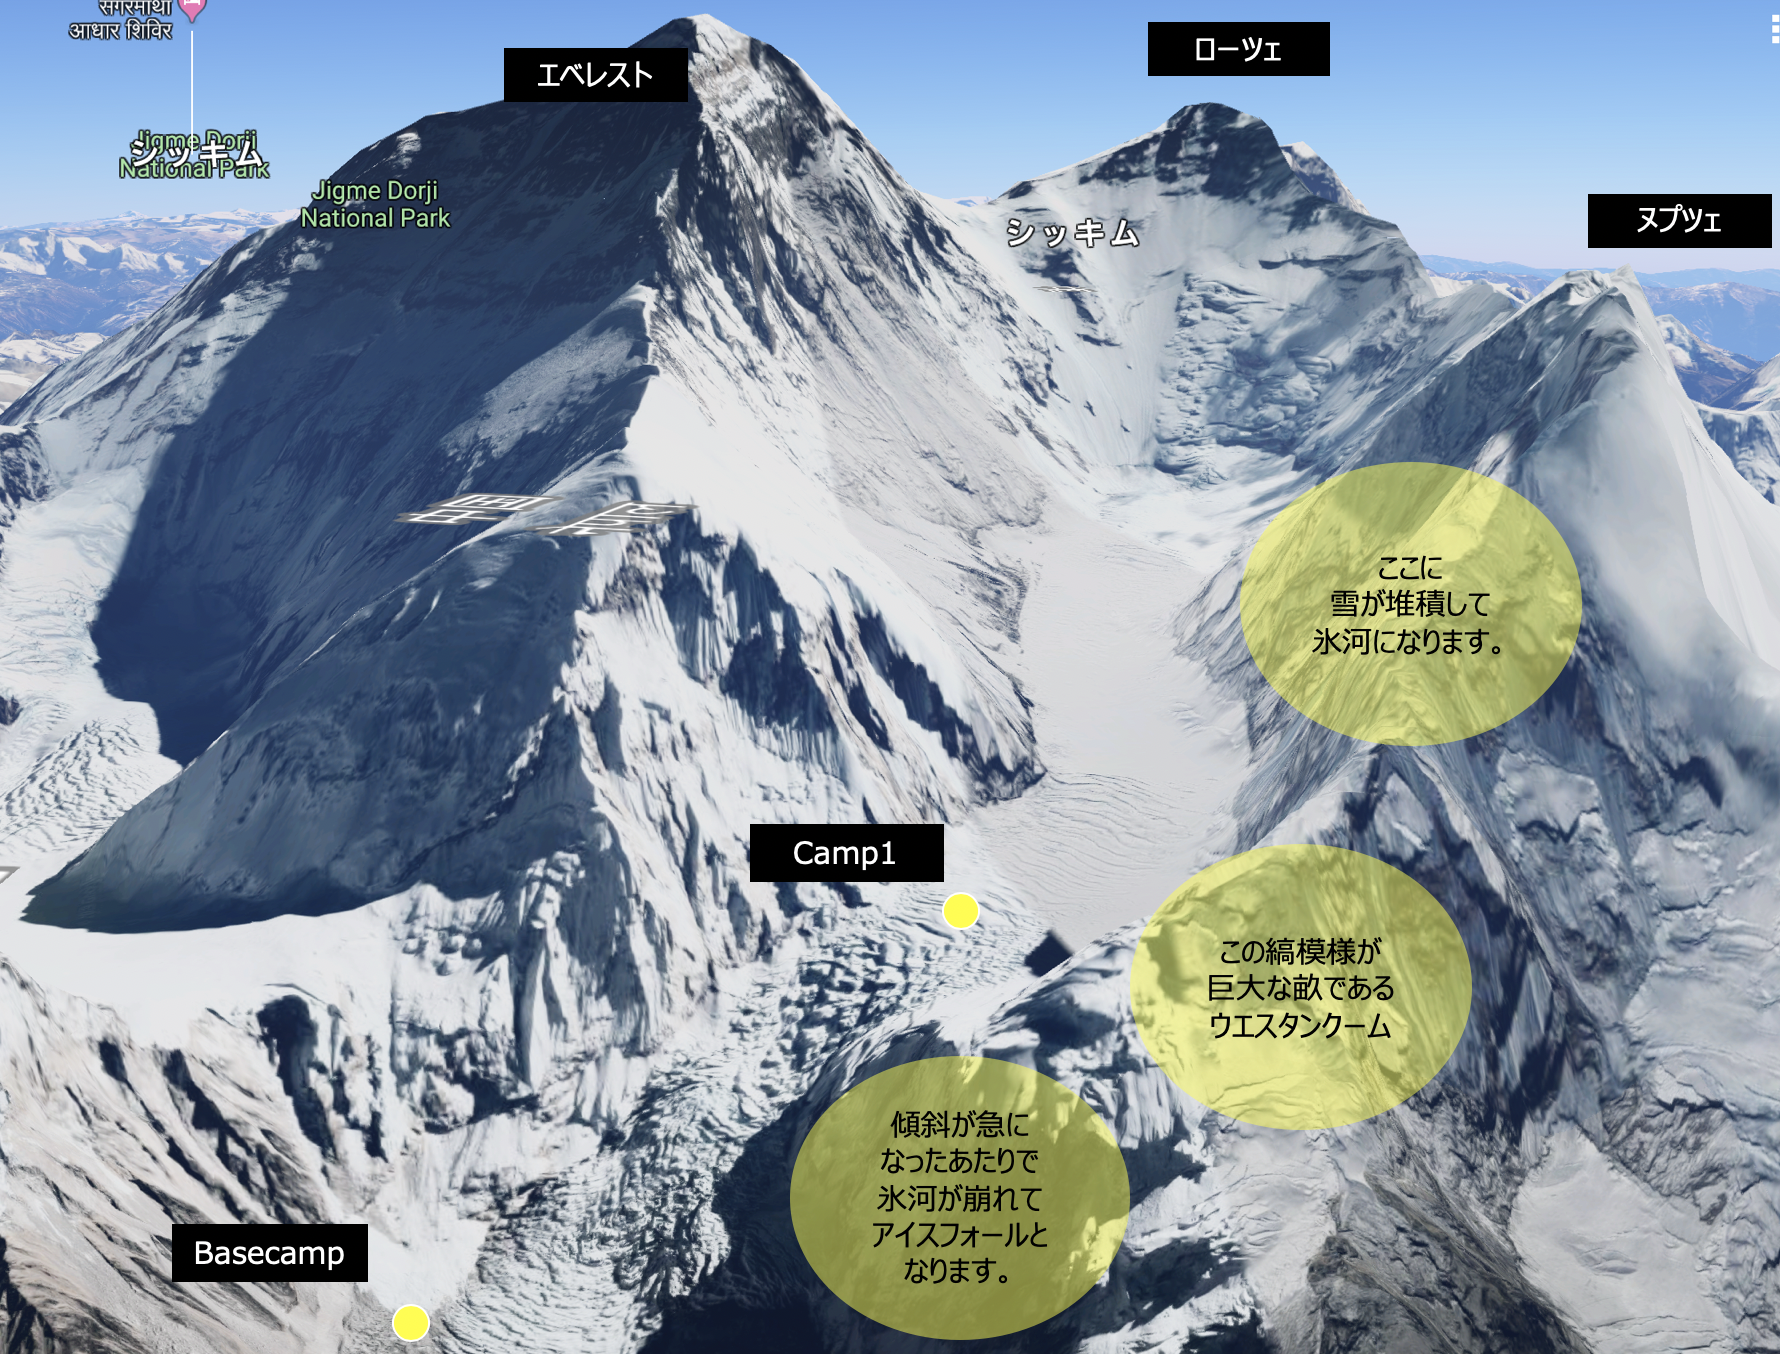 エベレスト登山 Day21 巨大な迷宮アイスフォールへ ワンダーズアドベンチャー エベレスト街道トレッキングツアーの専門店